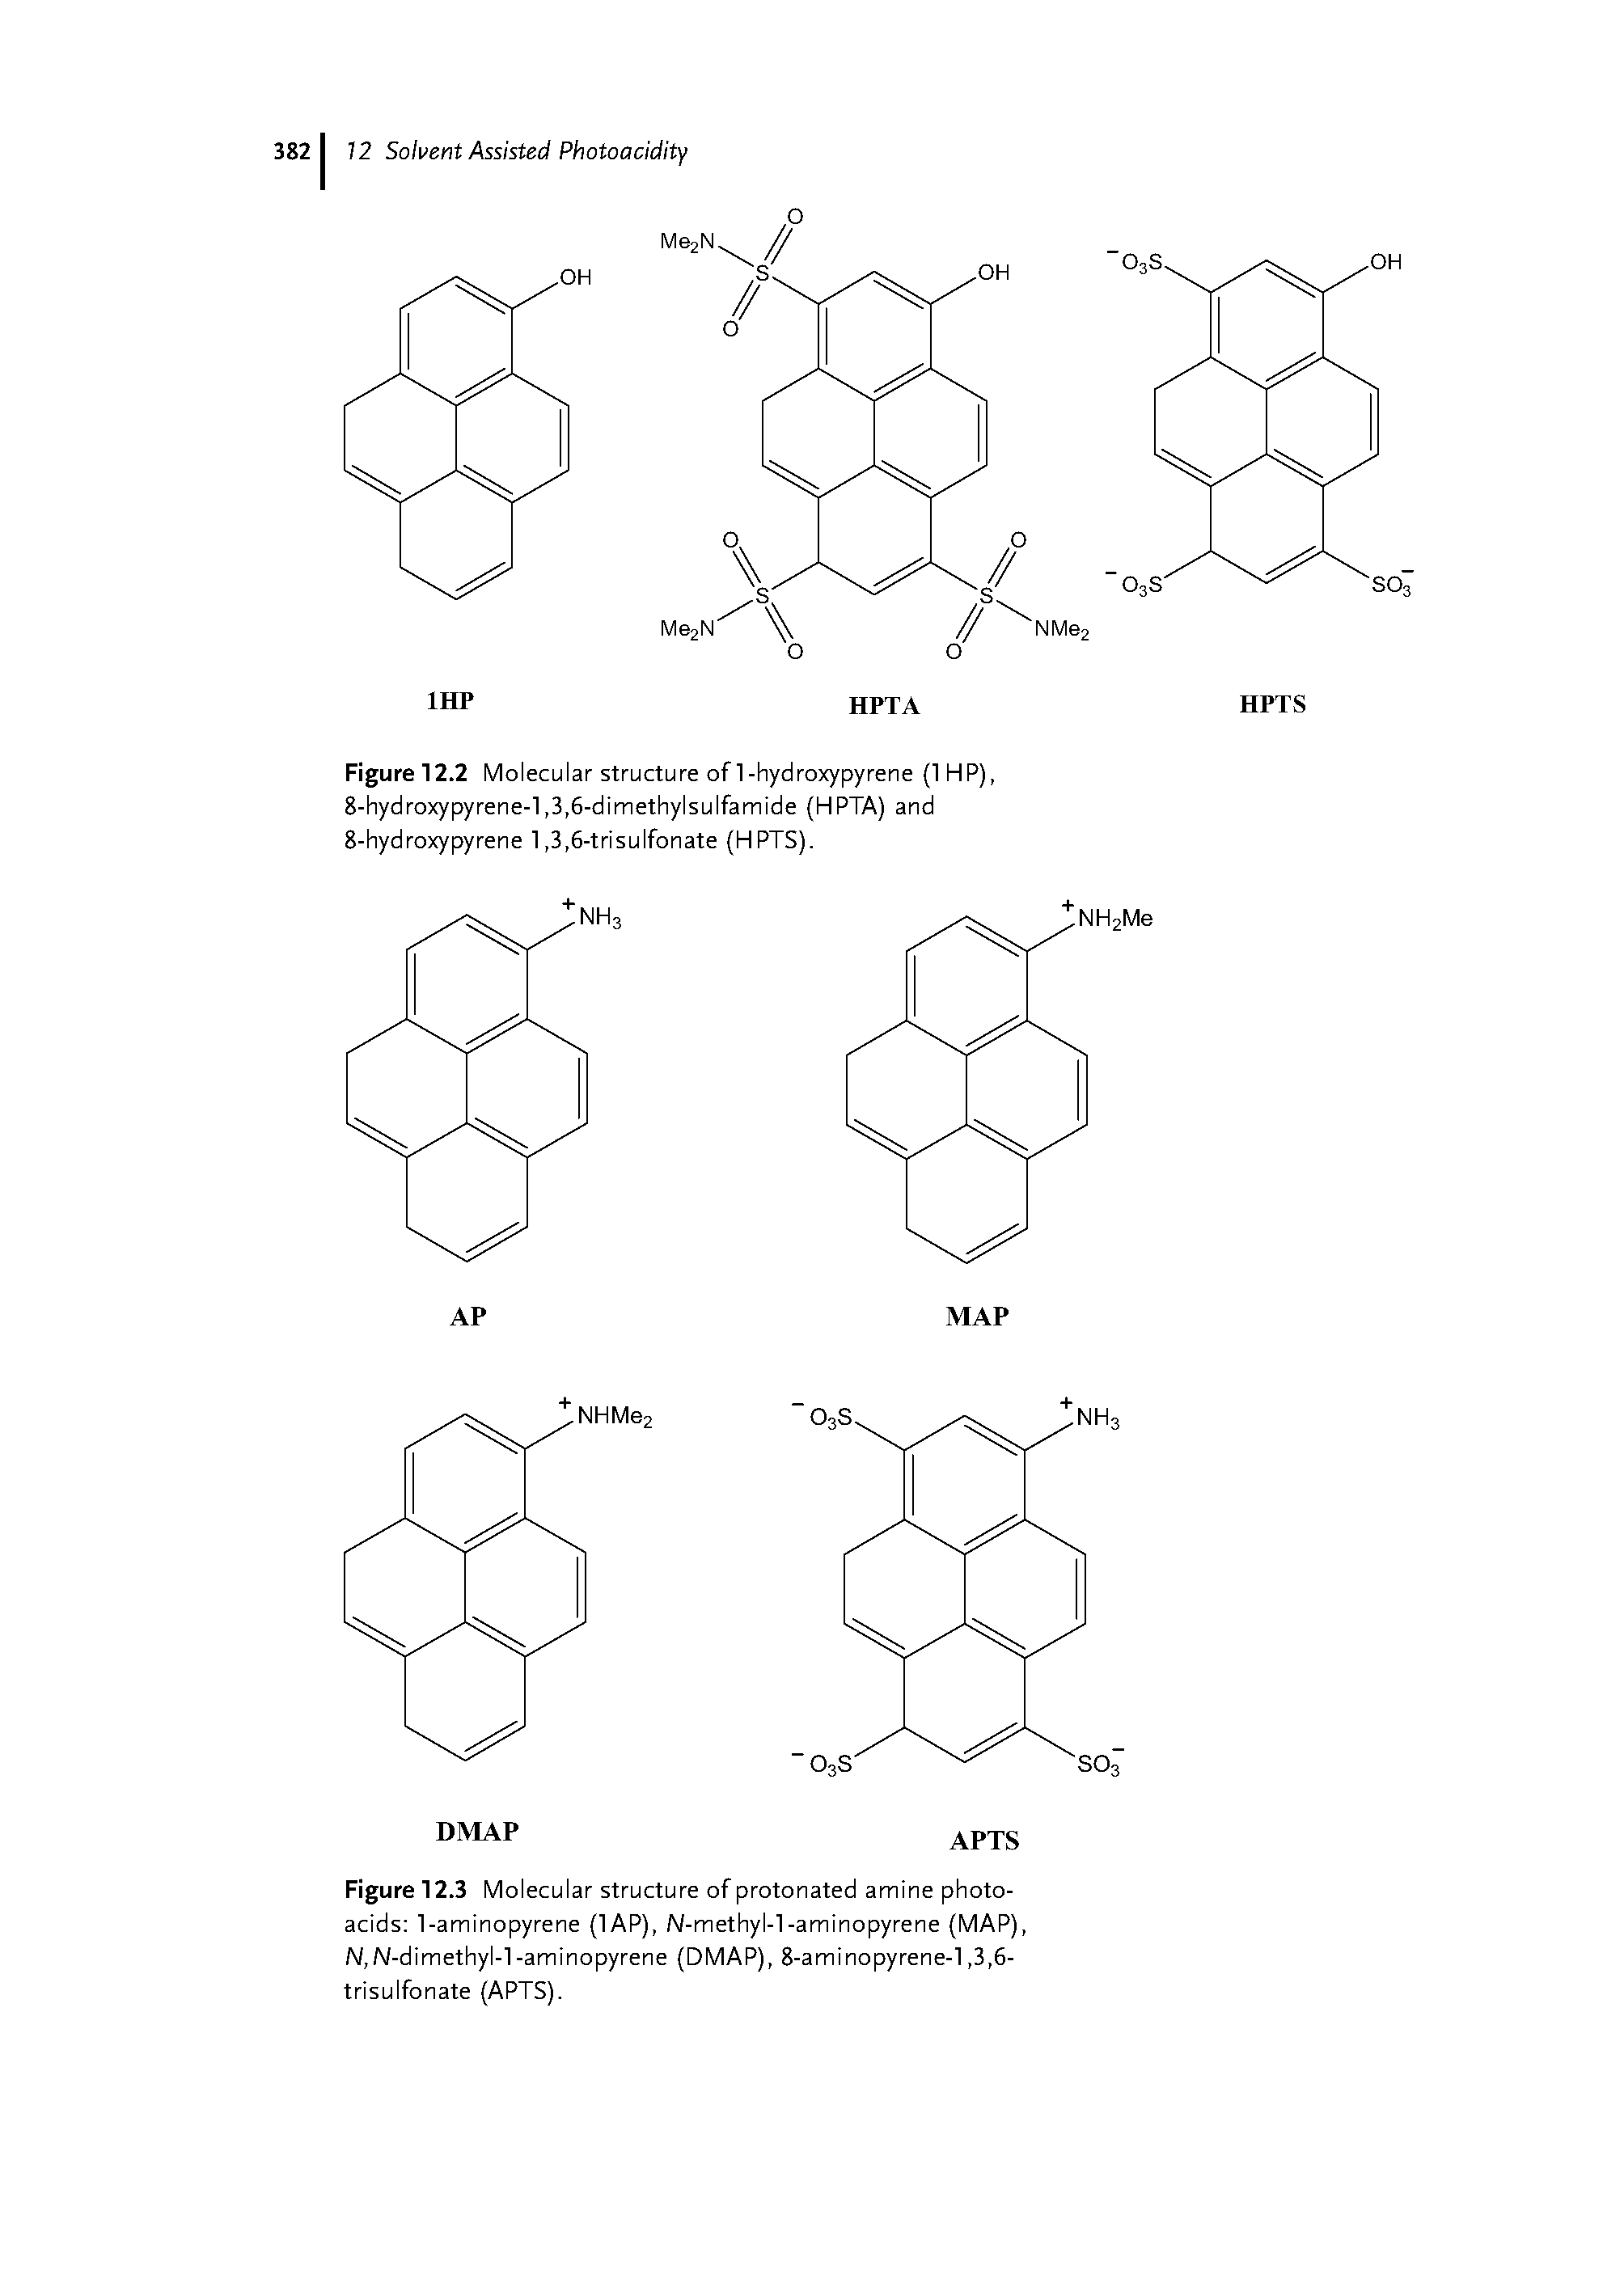 Figure 12.2 Molecular structure of 1-hydroxypyrene (IHP), 8-hydroxypyrene-l,3,6-dimethylsulfamide (HPTA) and 8-hydroxy pyrene 1,3,6-trisulfonate (HPTS).